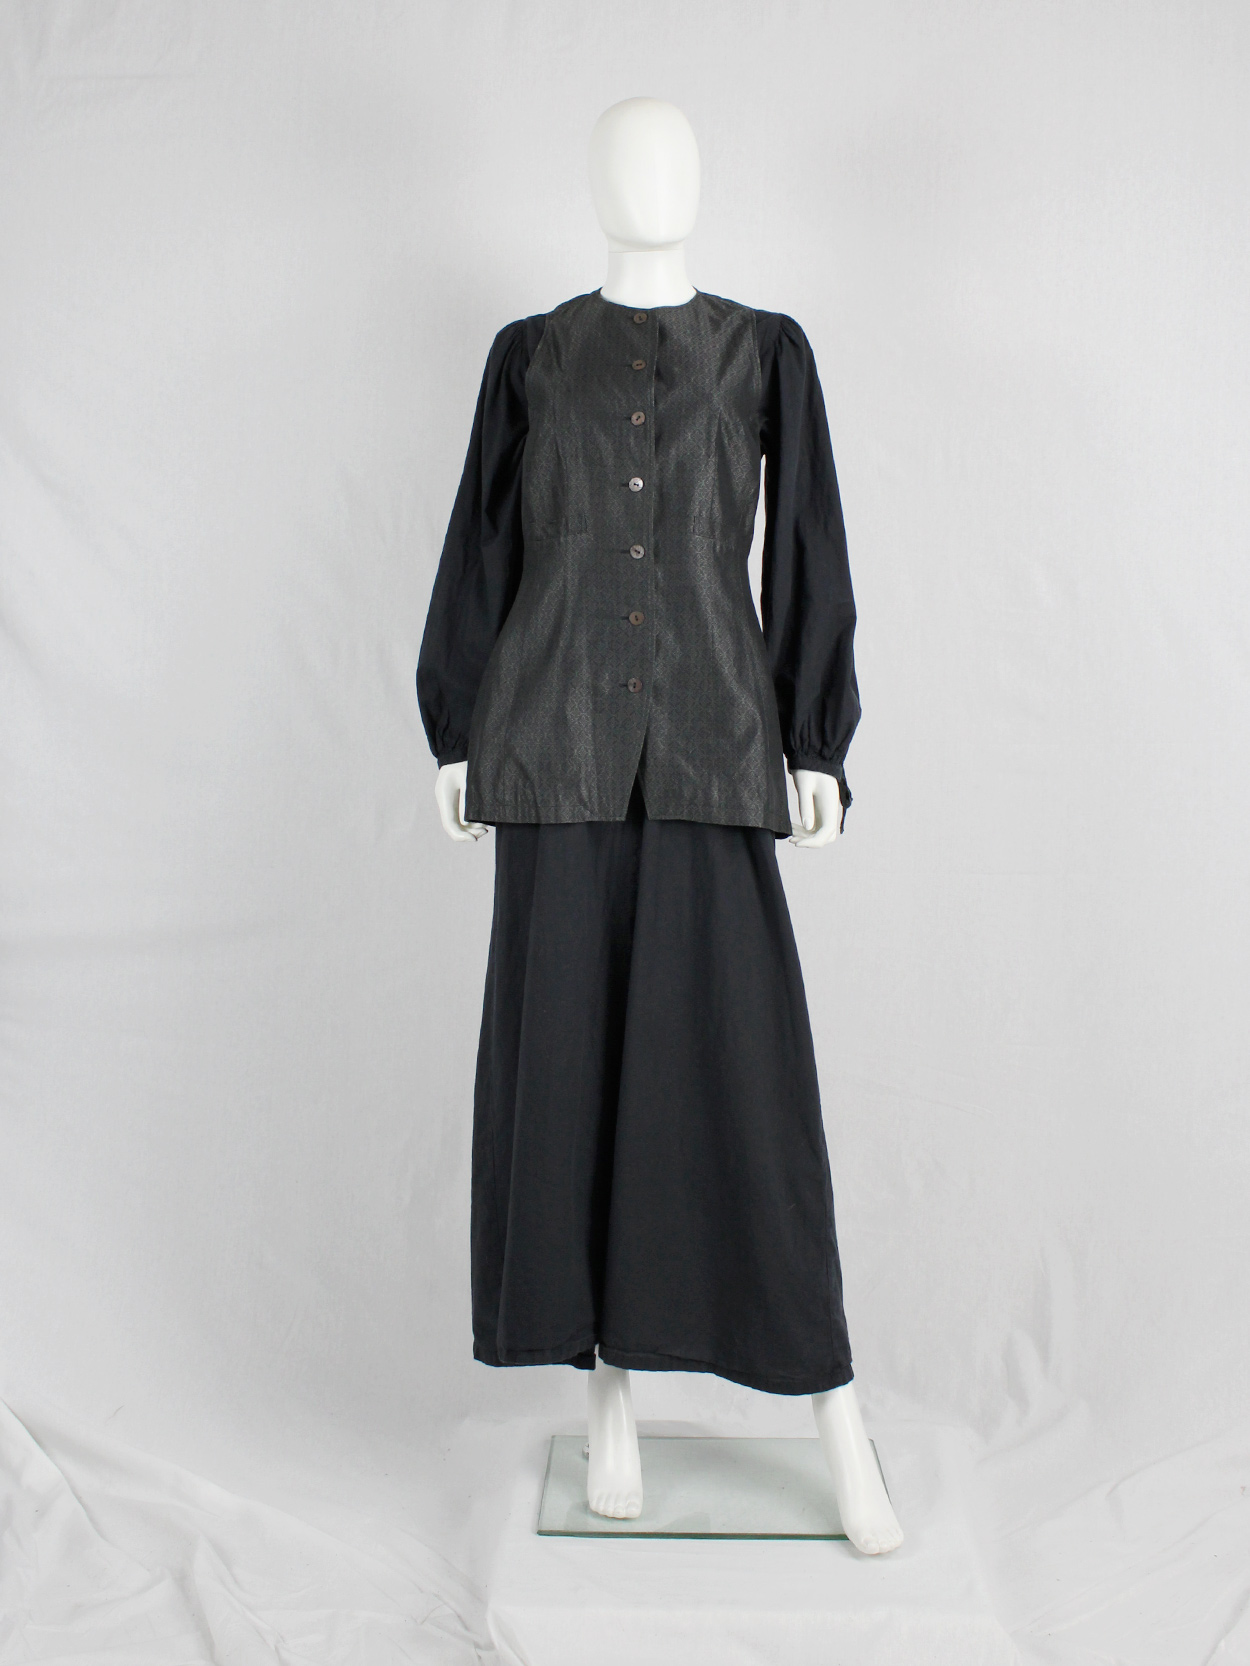 vaniita Dries Van Noten long brocade waistcoat in silver and black 1980s 80s (7)